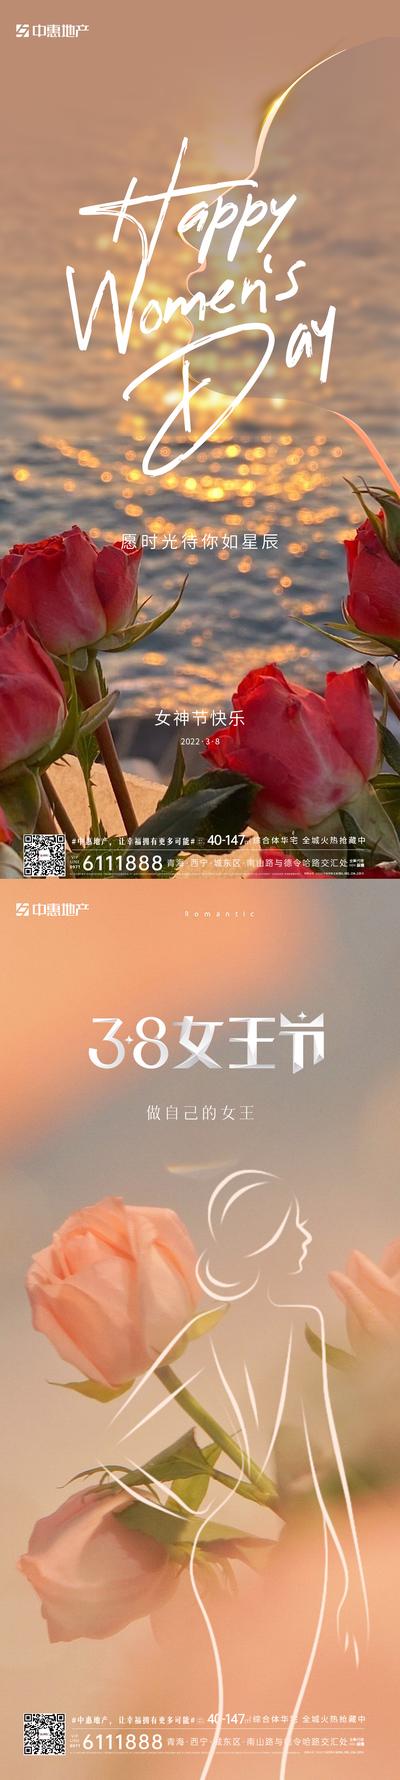 南门网 海报 公历节日 38 妇女节 浪漫 女神节 玫瑰